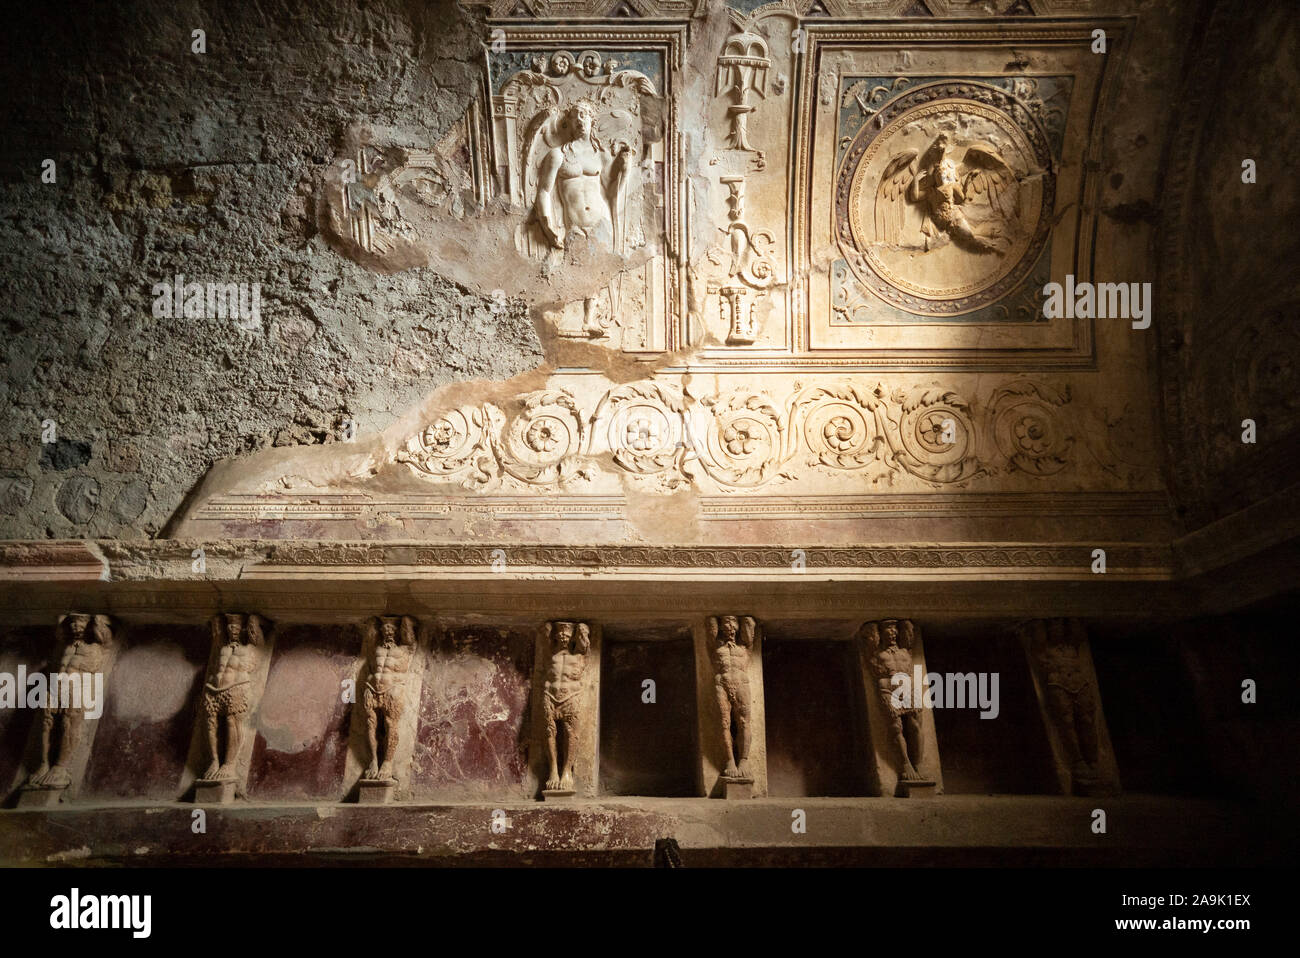 Pompei. L'Italia. Sito archeologico di Pompei. Tepidarium nelle Terme del Foro (Bagni Forum), le pareti sono rivestite con nicchie per unguenti e asciugamano Foto Stock